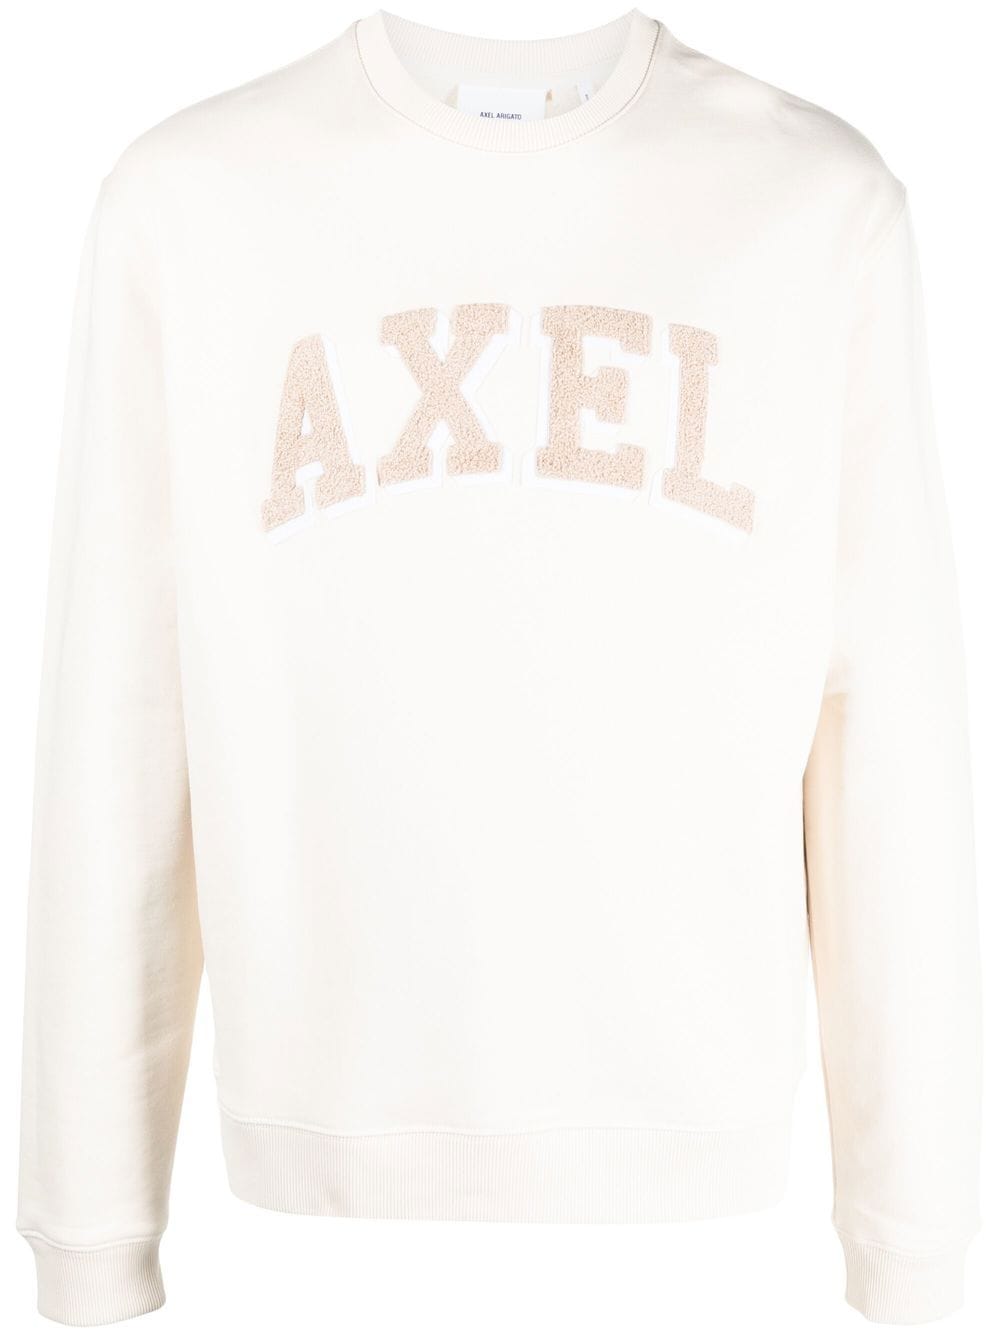 Axel Arc appliqué sweatshirt